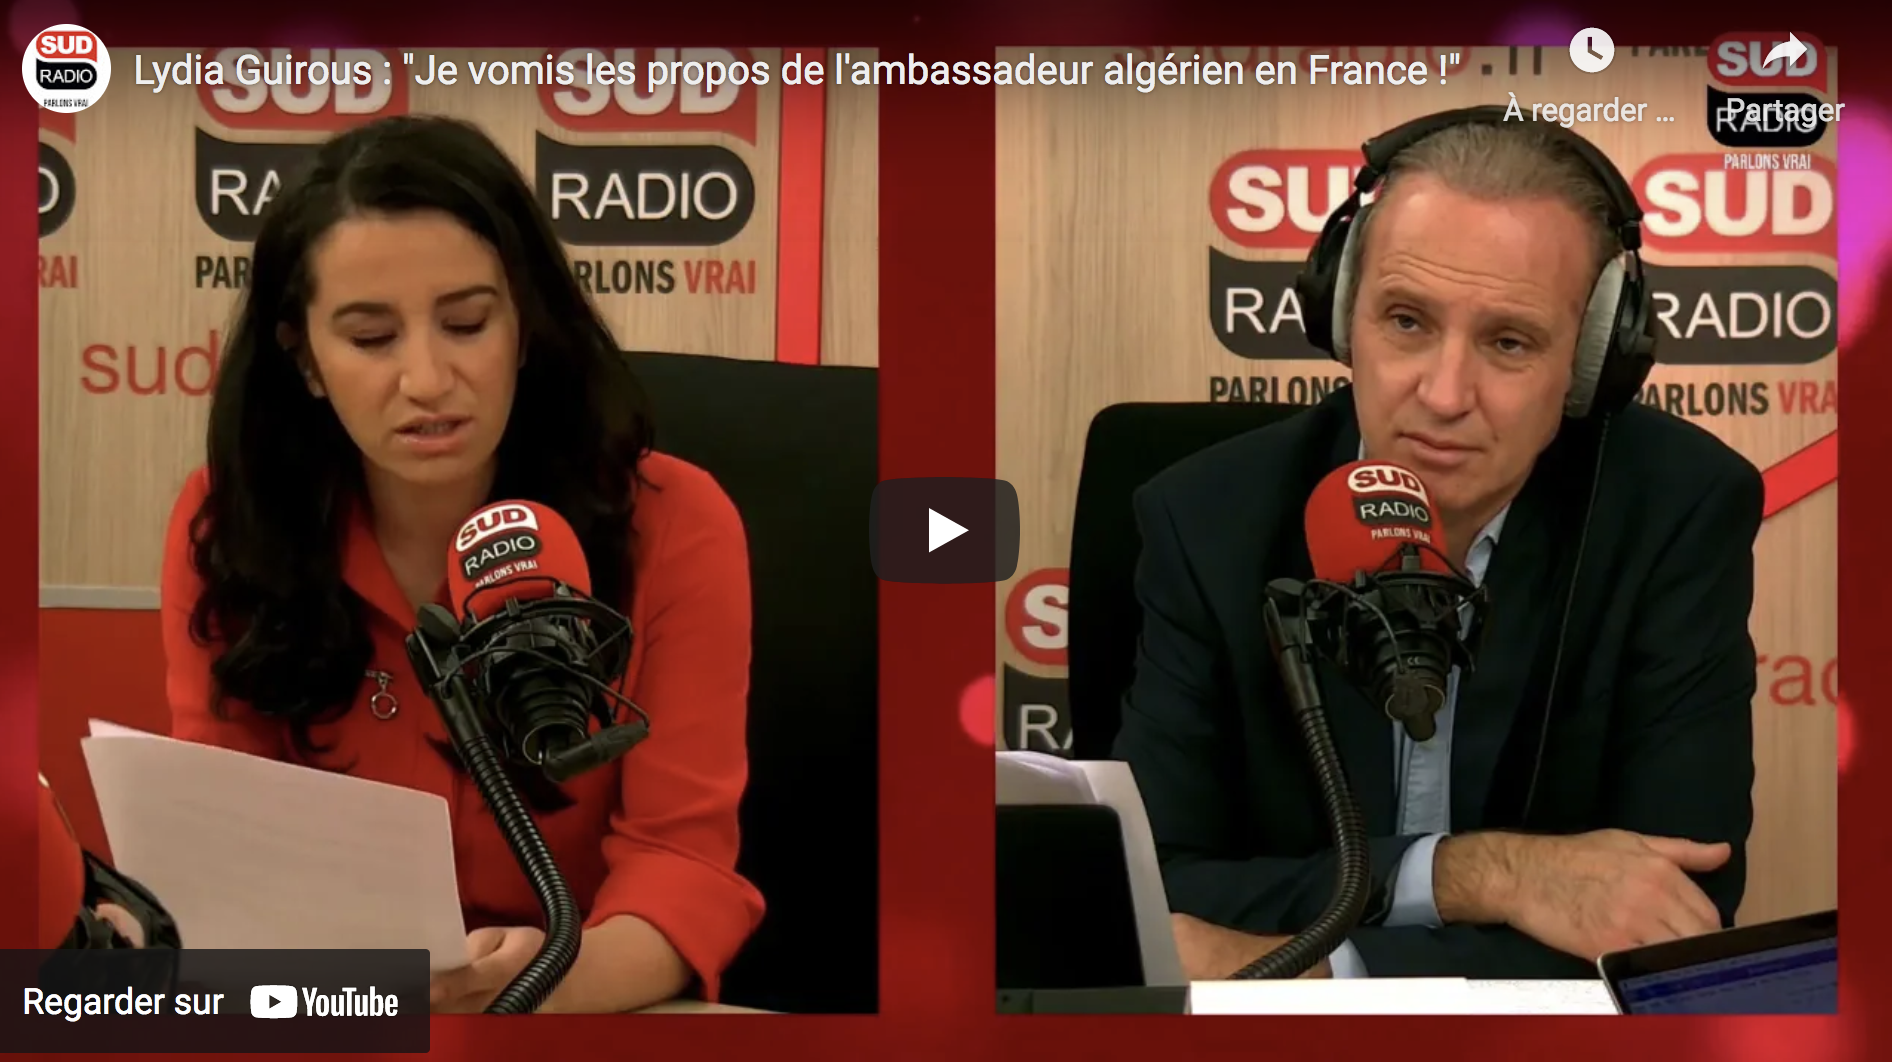 Lydia Guirous : “Je vomis les propos de l’ambassadeur algérien en France !” (VIDÉO)